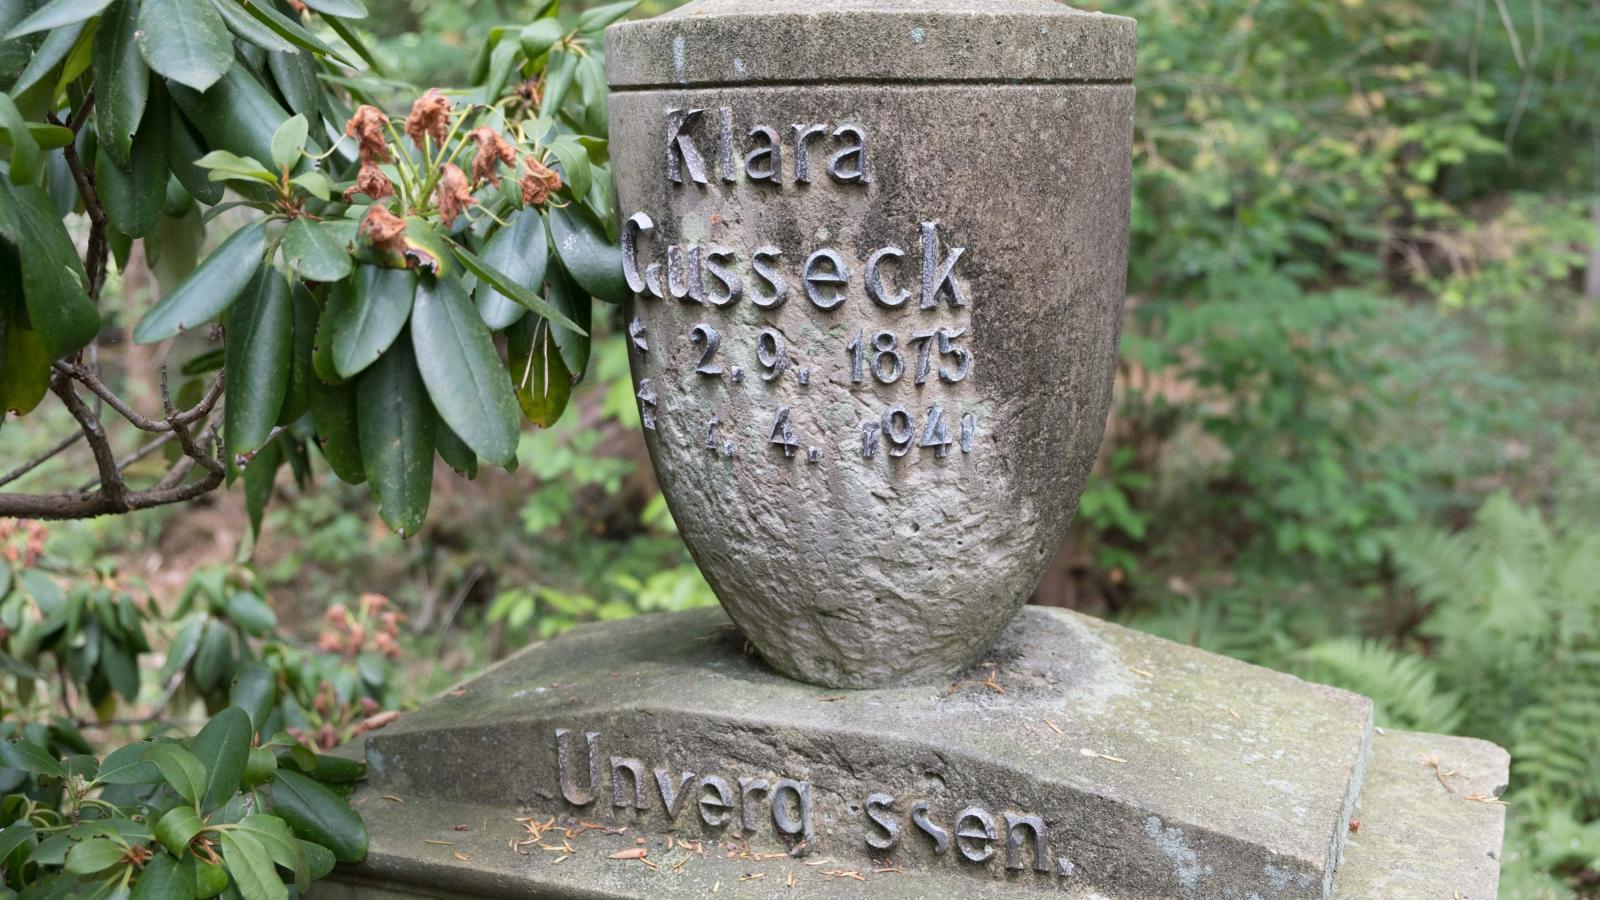 Grabmal von Clara Gusseck mit einer Aufschrift aus kupfernen Lettern. Die Aufschrift umfasst ihren Namen, Geburts- und Sterbedatum und den Zusatz "unvergessen". Clara Gusseck lebte von 1875 bis 1941.